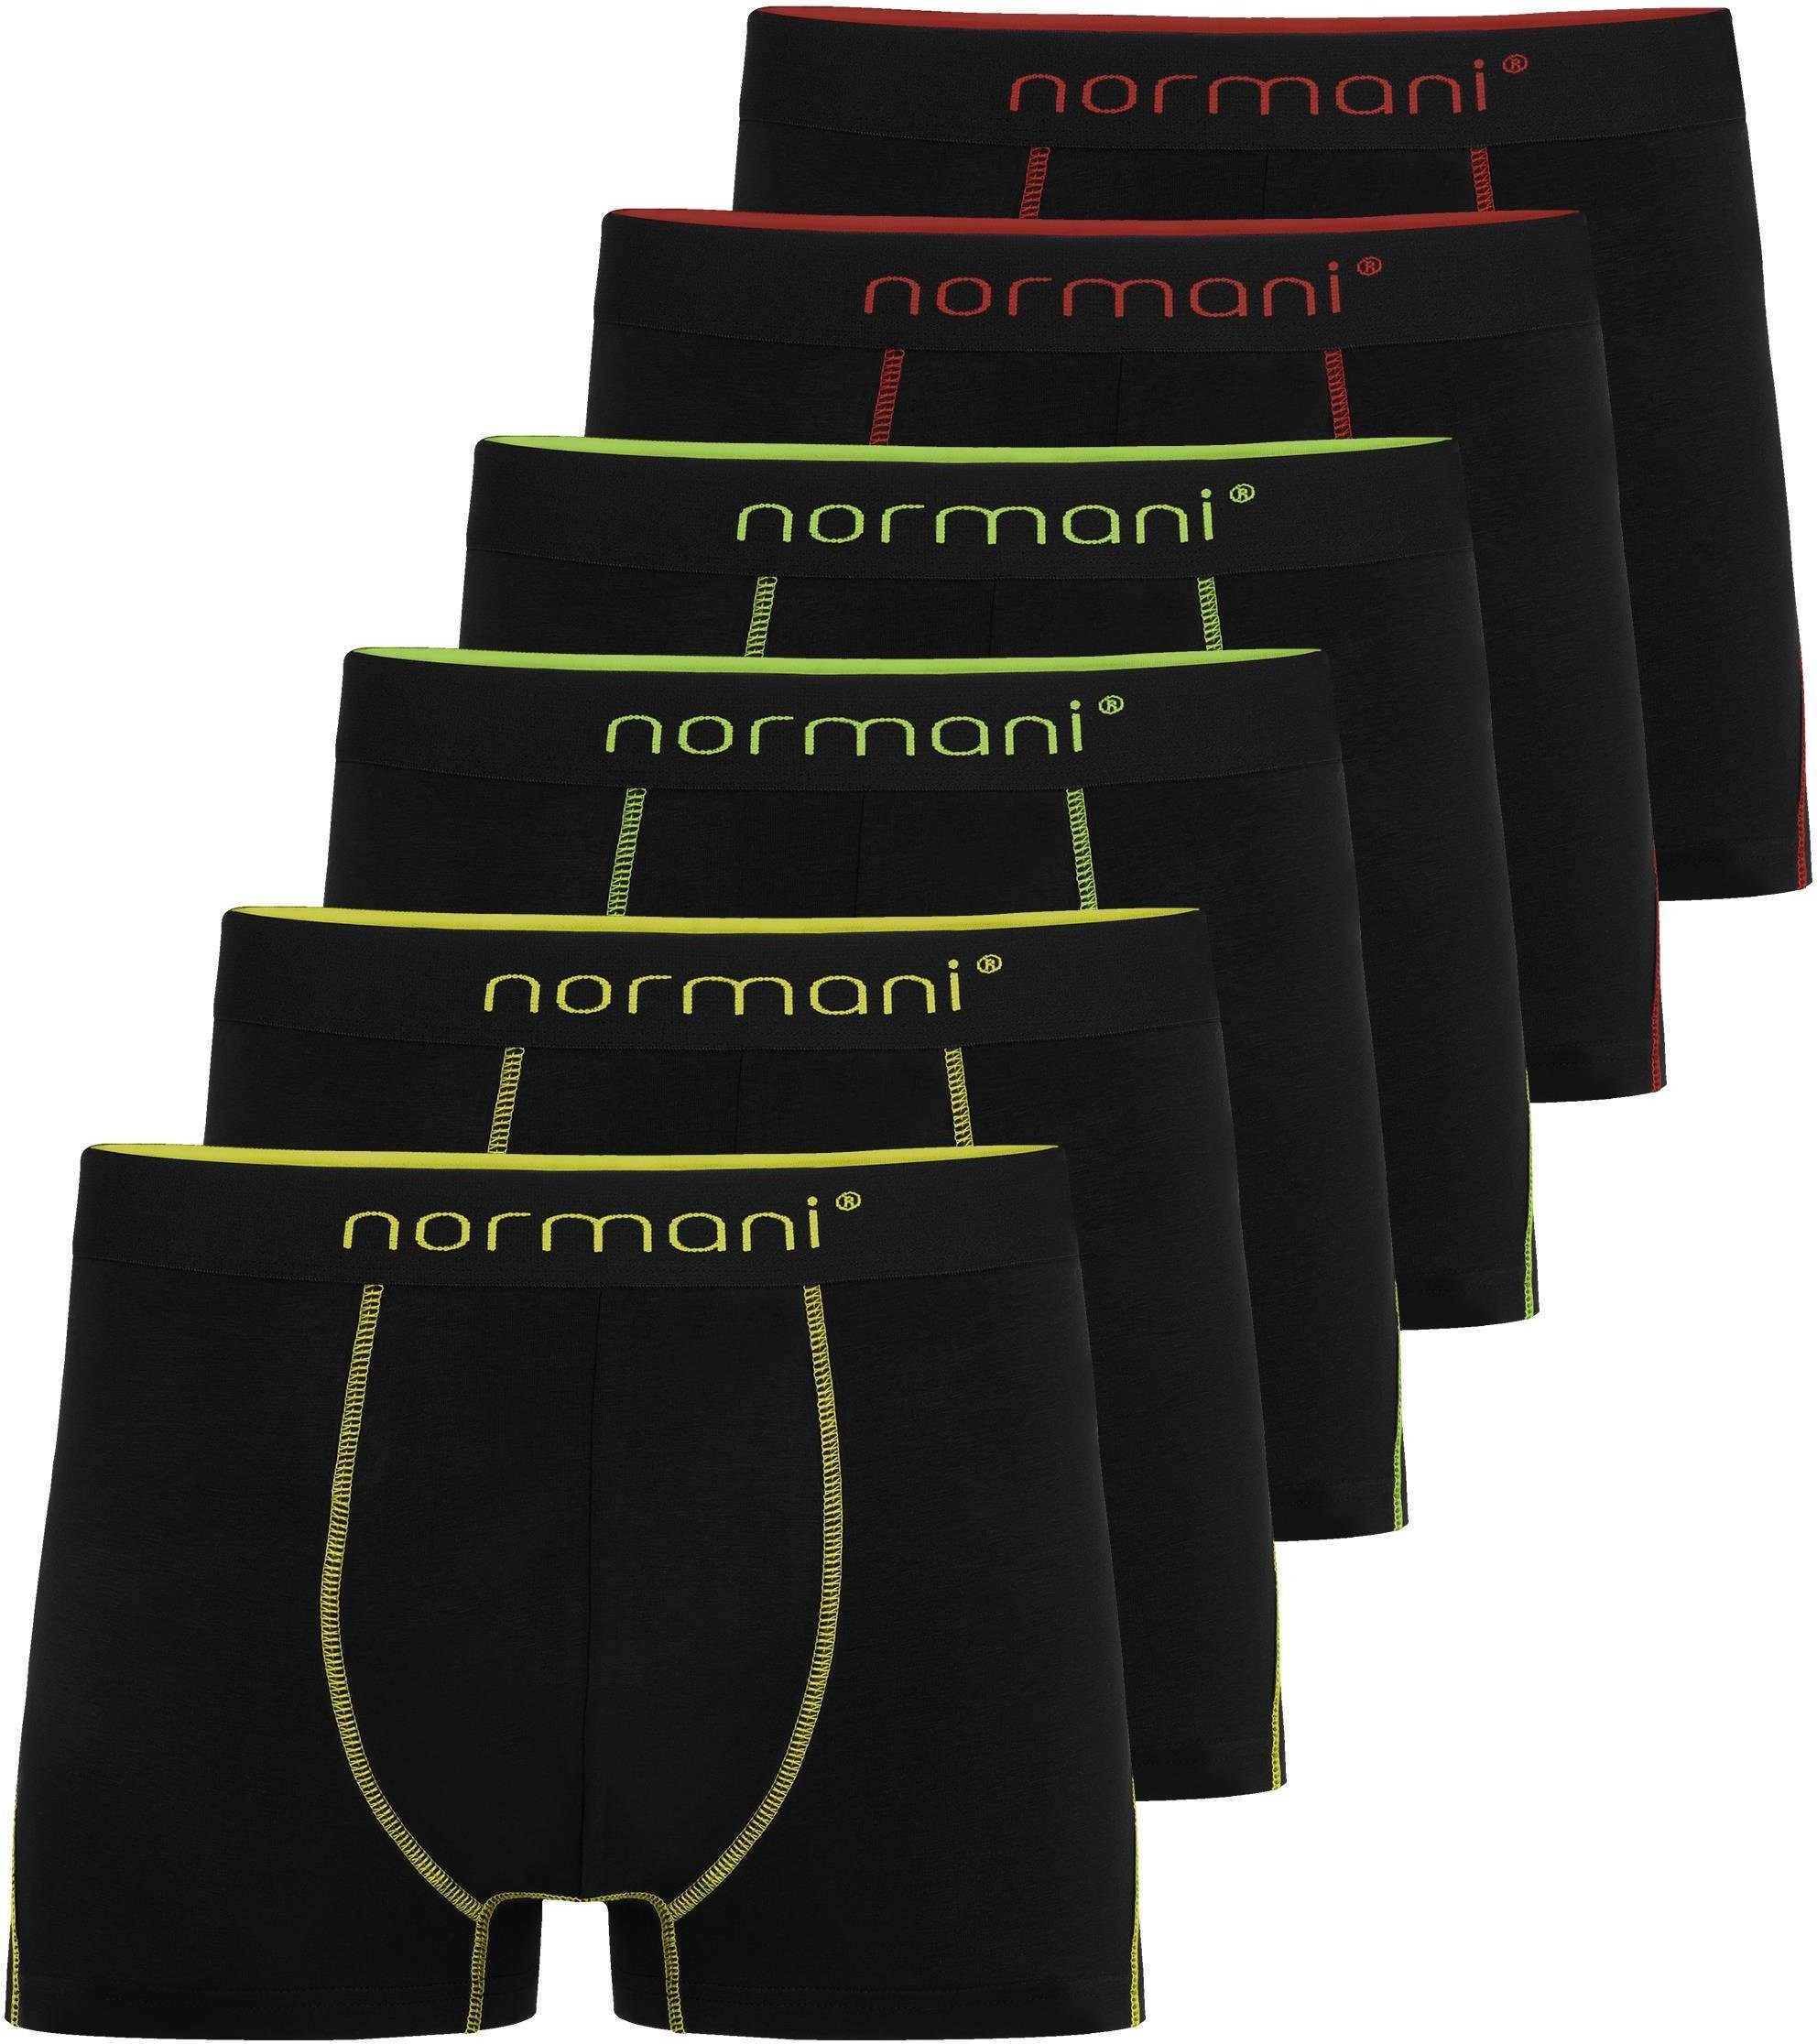 normani Boxershorts 6x Herren Baumwoll-Boxershorts Unterhose aus atmungsaktiver Baumwolle für Männer Gelb/Grün/Rot